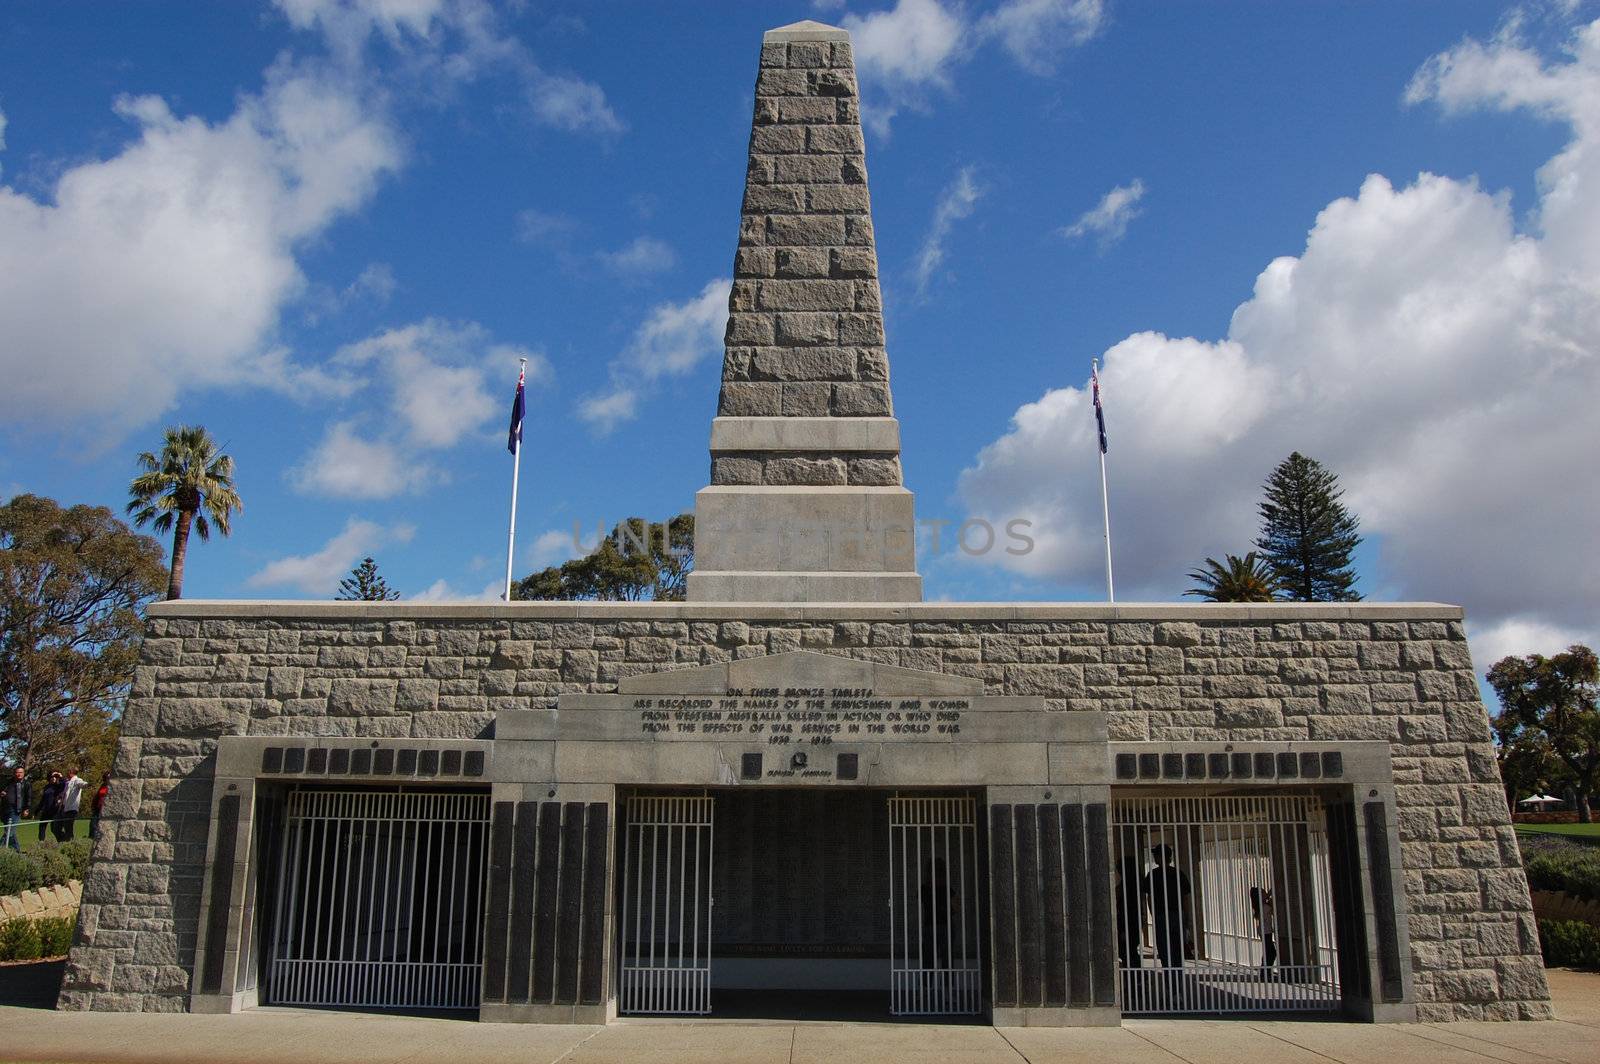 ANZAC war memorial in Kings park, Perth